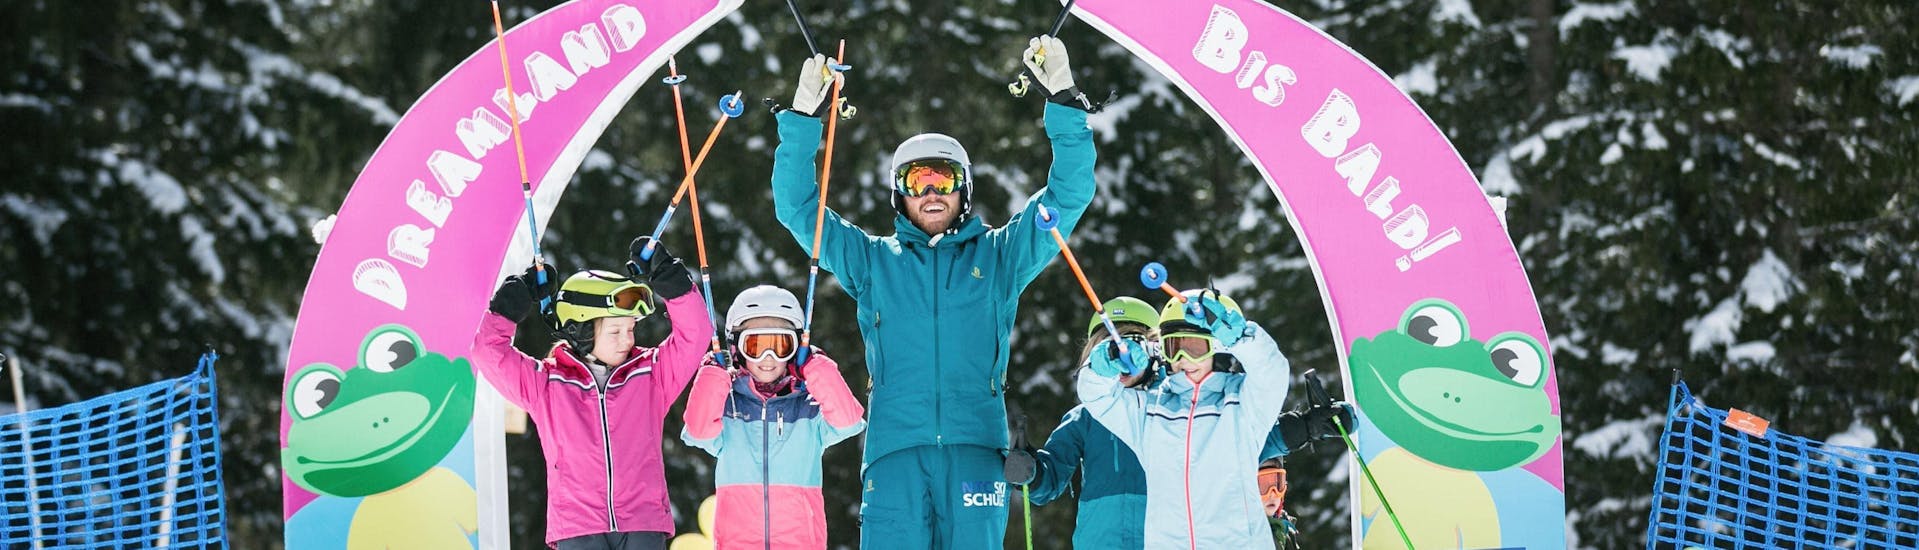 Lezioni di sci per bambini a partire da 4 anni principianti assoluti.